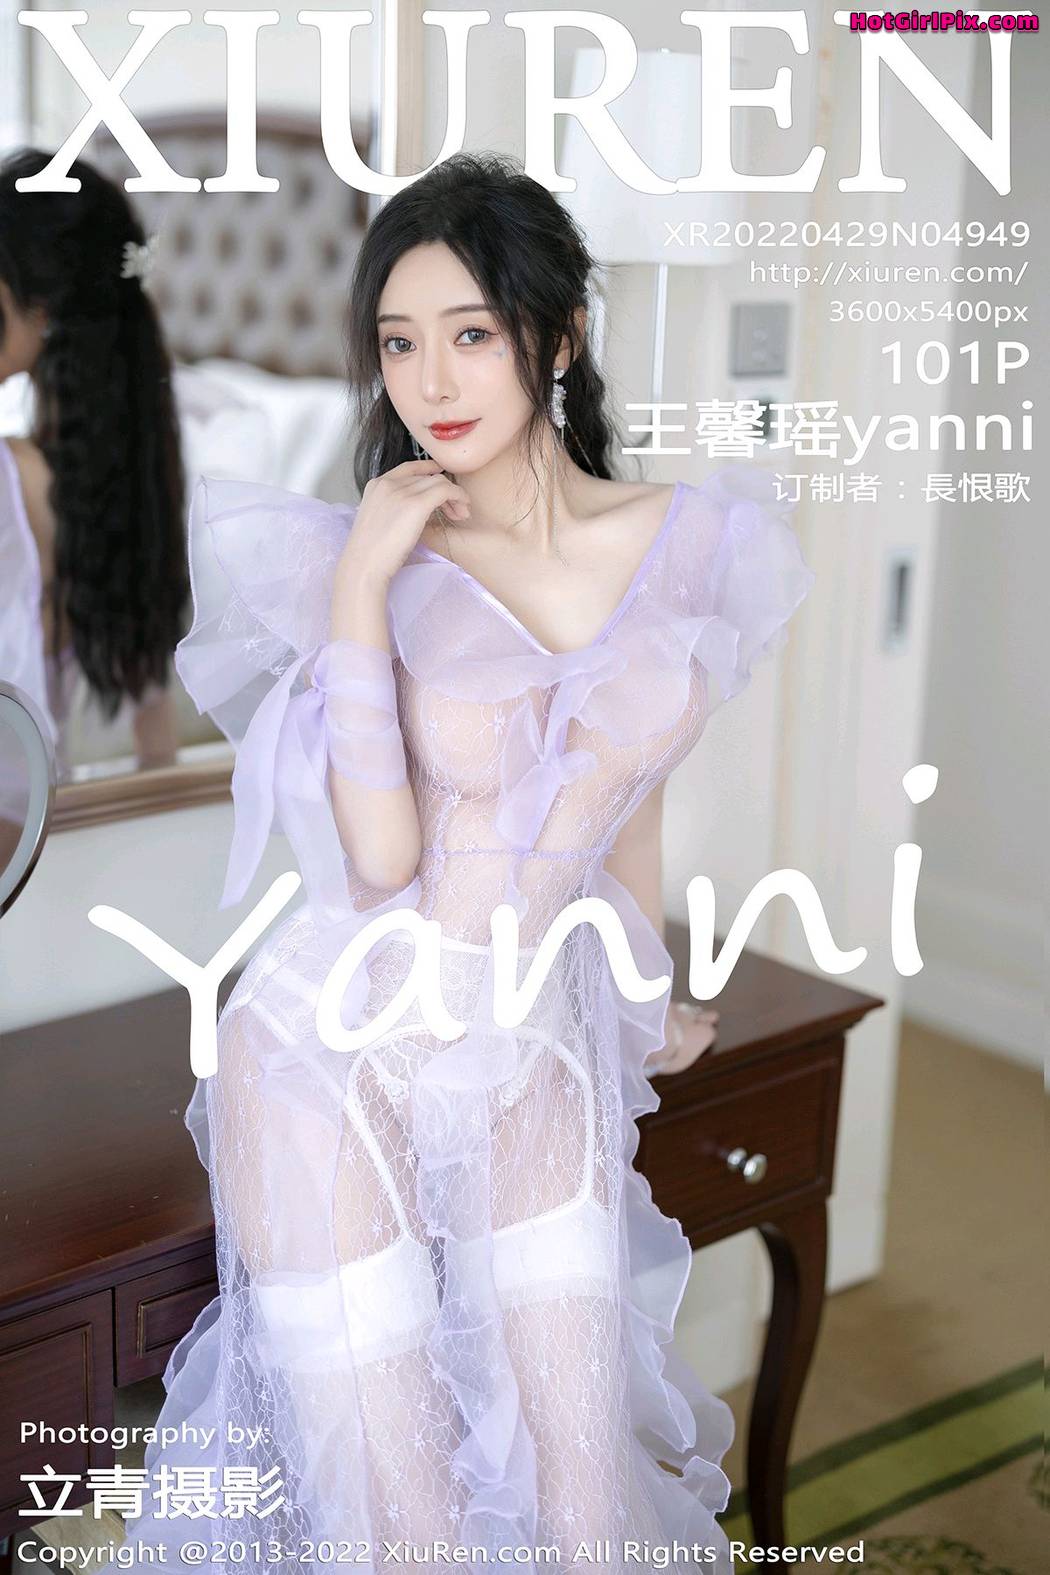 [XIUREN] No.4949 Wang Xin Yao 王馨瑶yanni